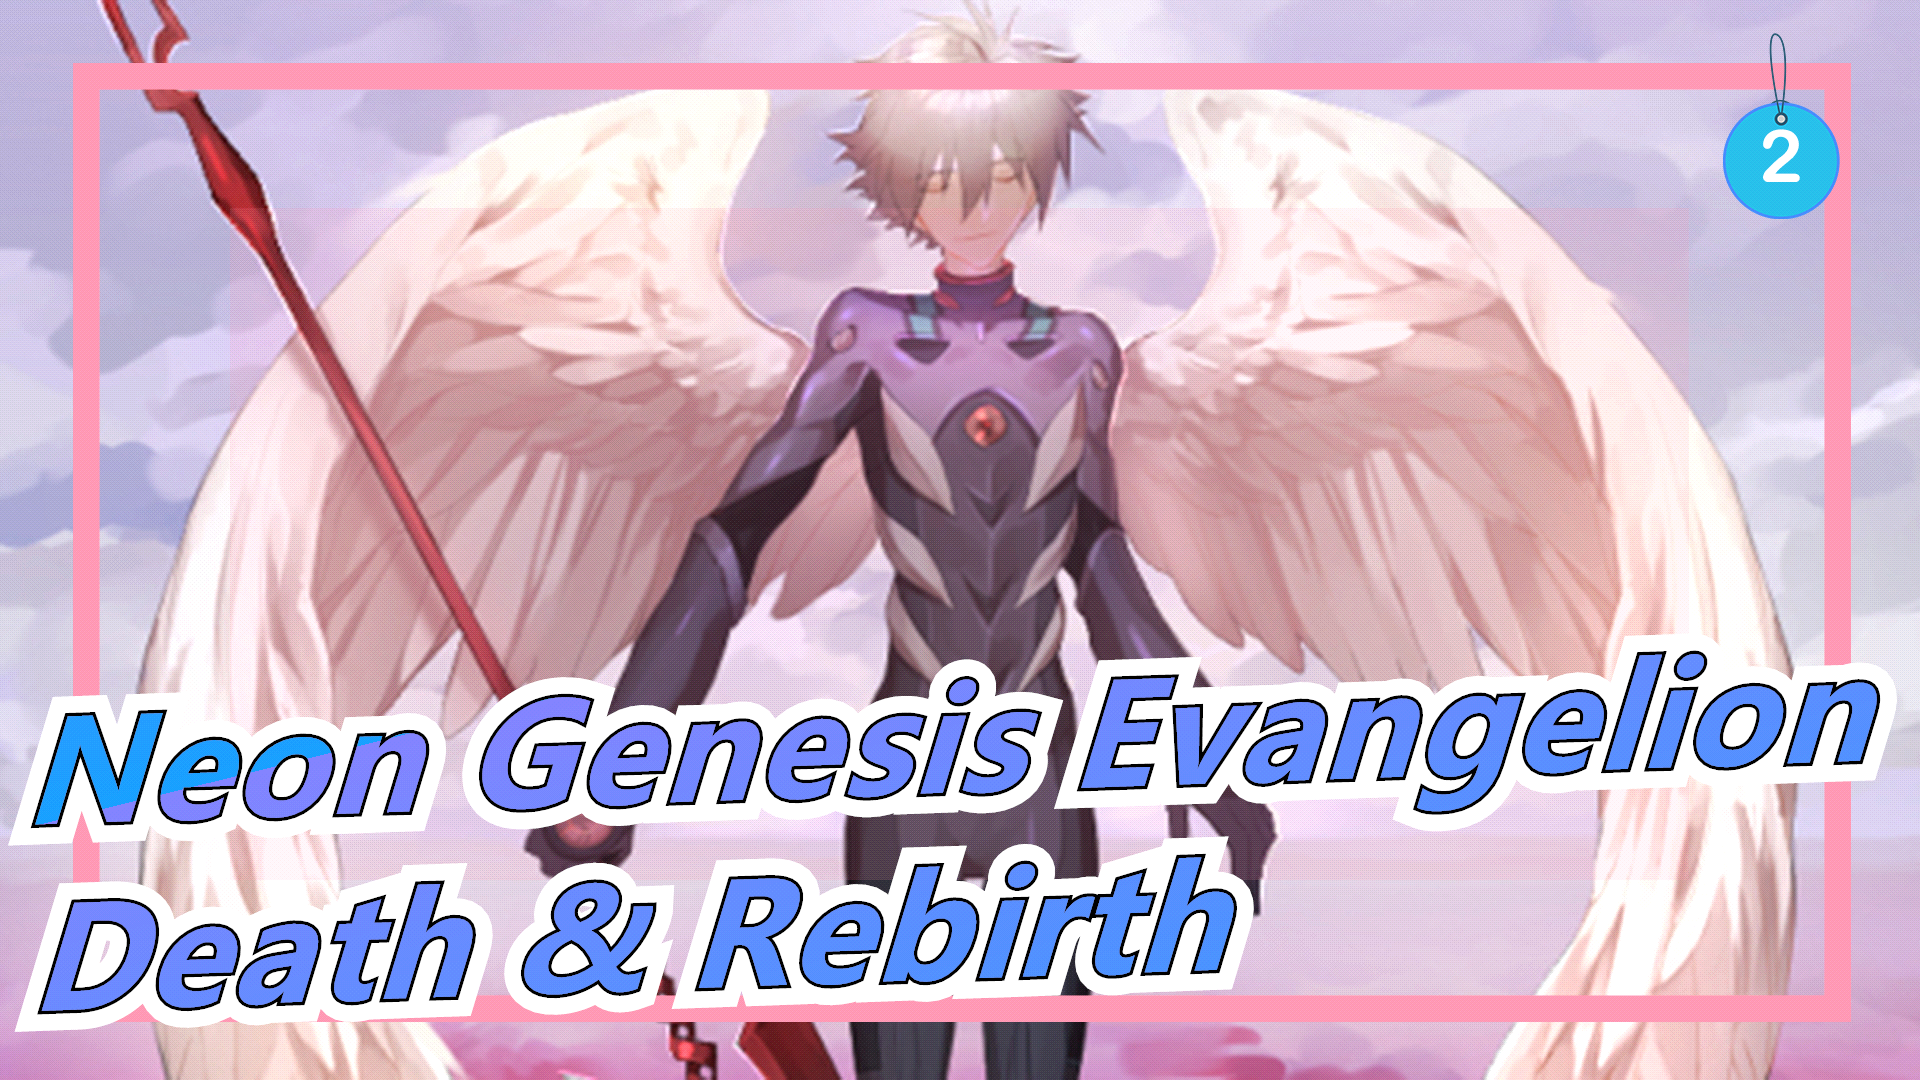 neon-genesis-evangelion-death--rebirth